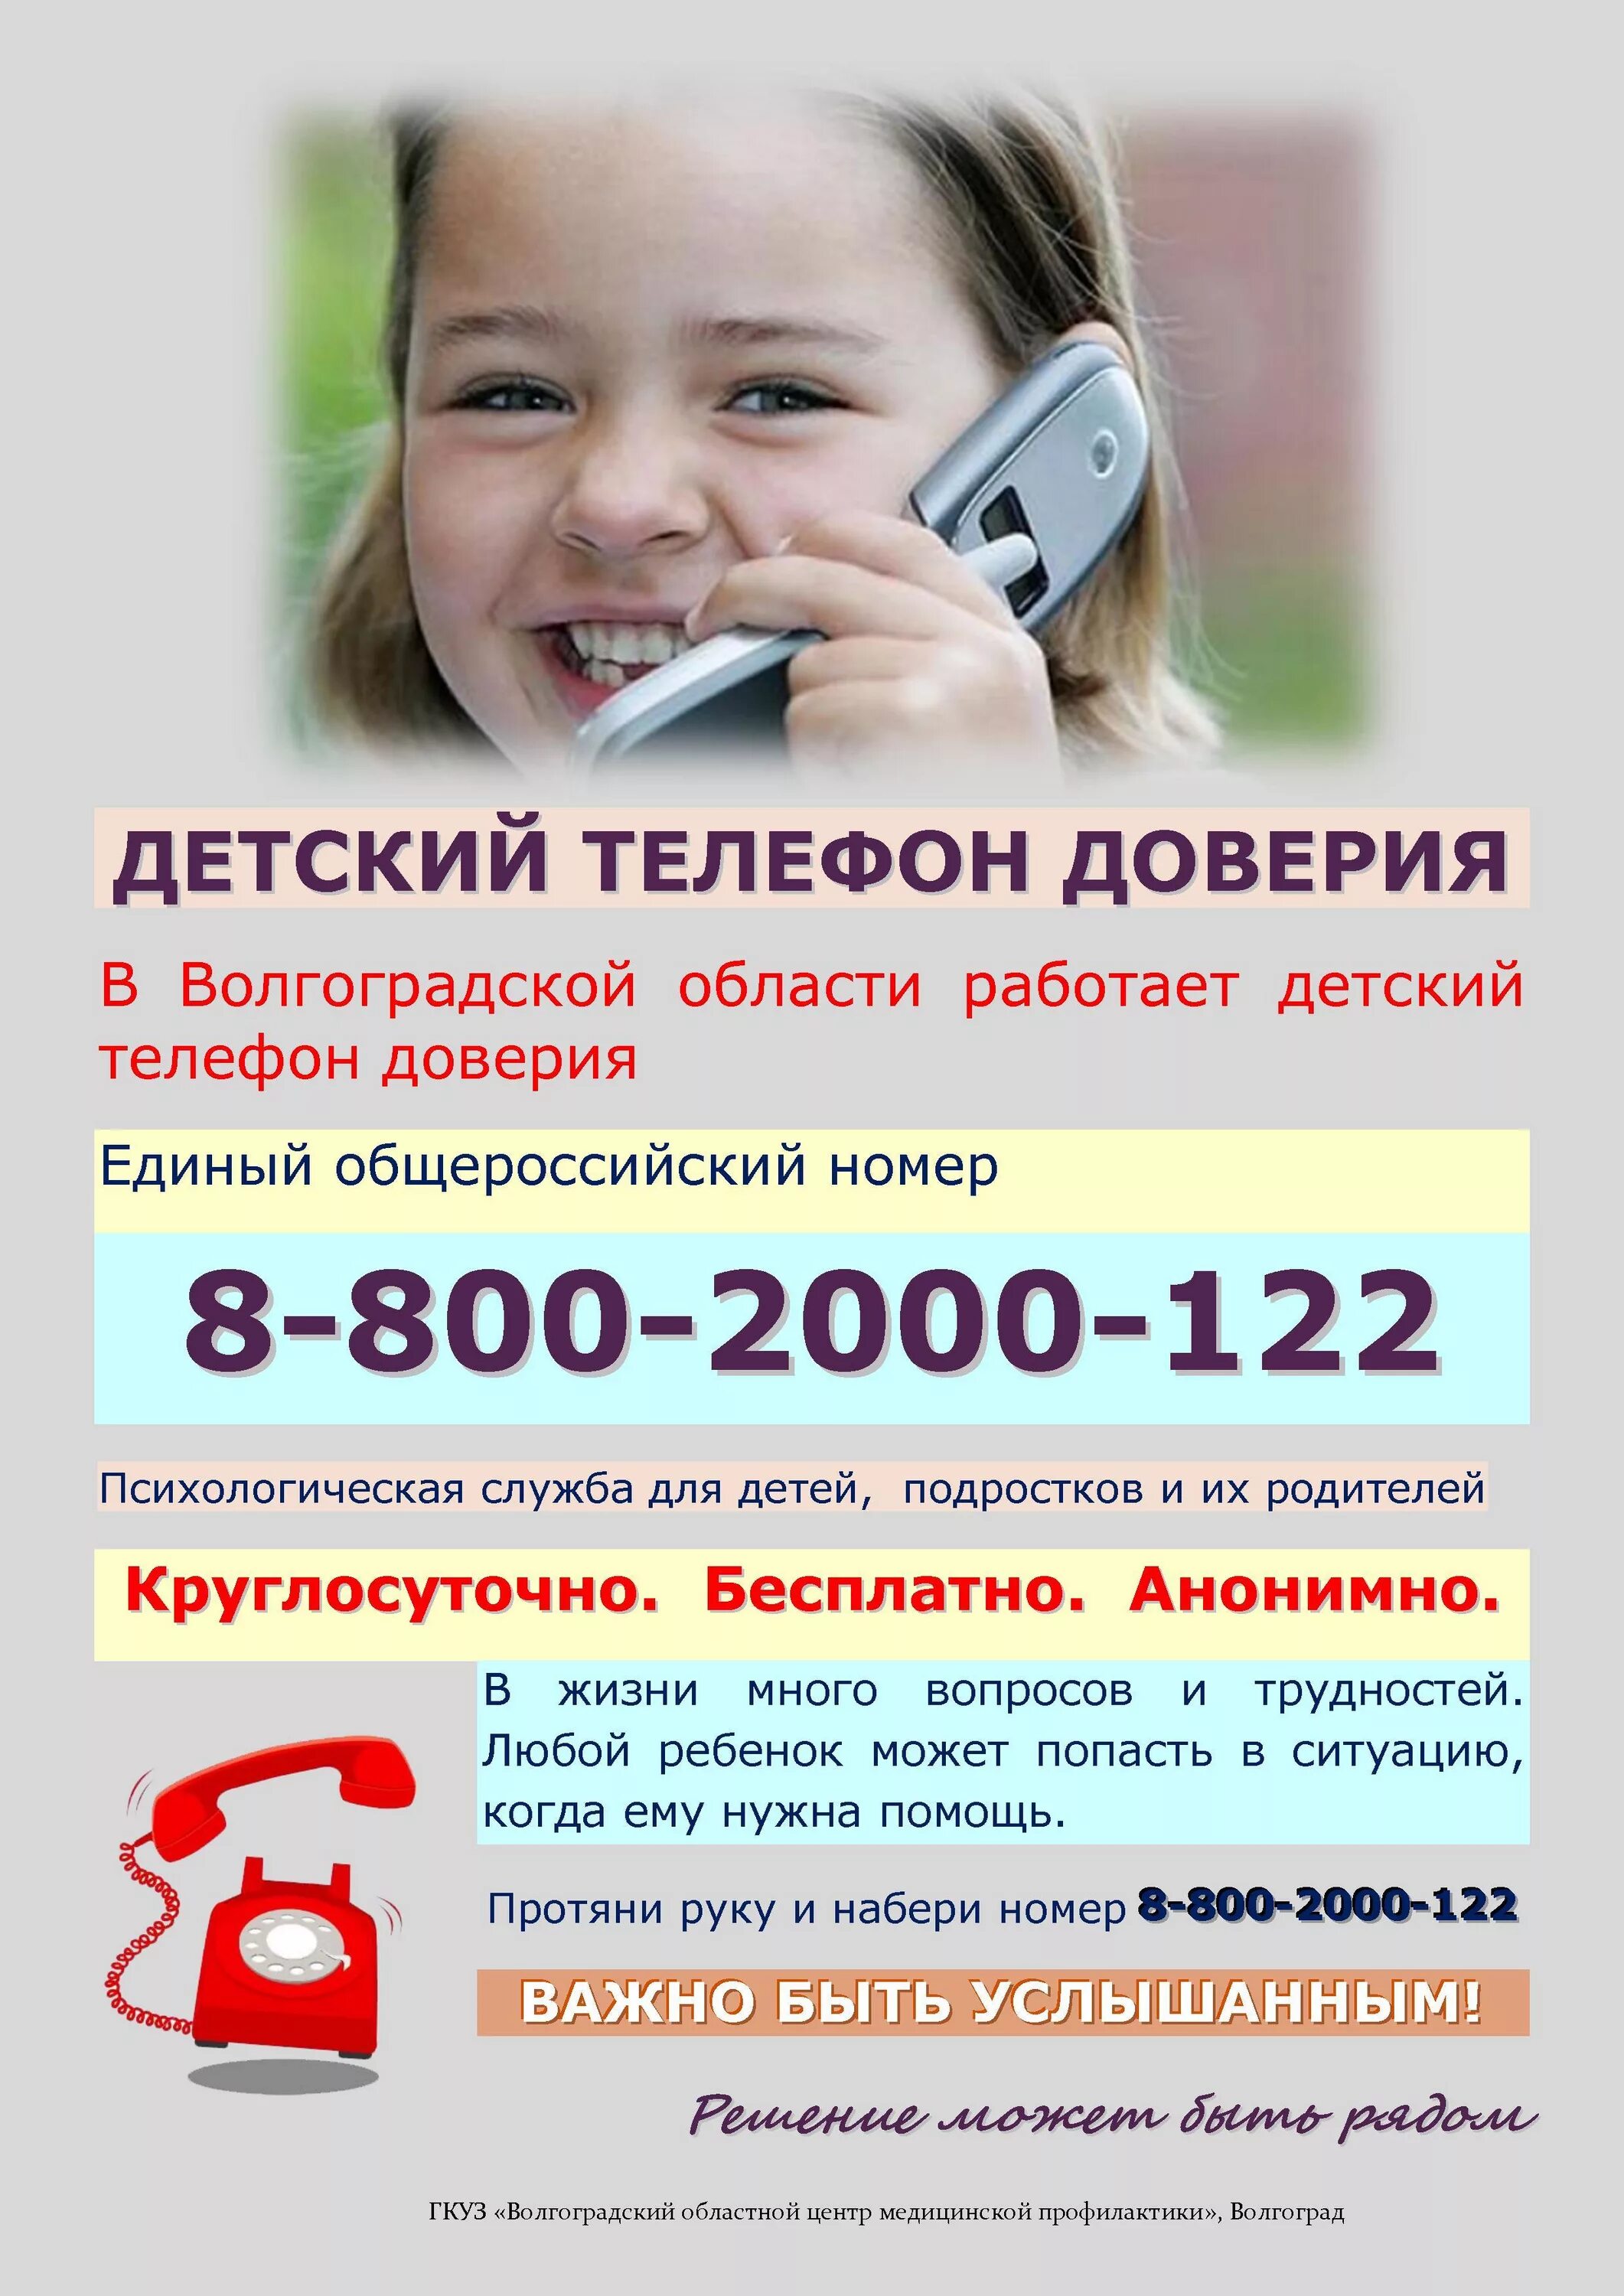 Номер горячей линии по детям. Телефон доверия. Детский телефон доверия. Телефон доверия для детей подростков и их родителей. Номер телефона доверия для детей.